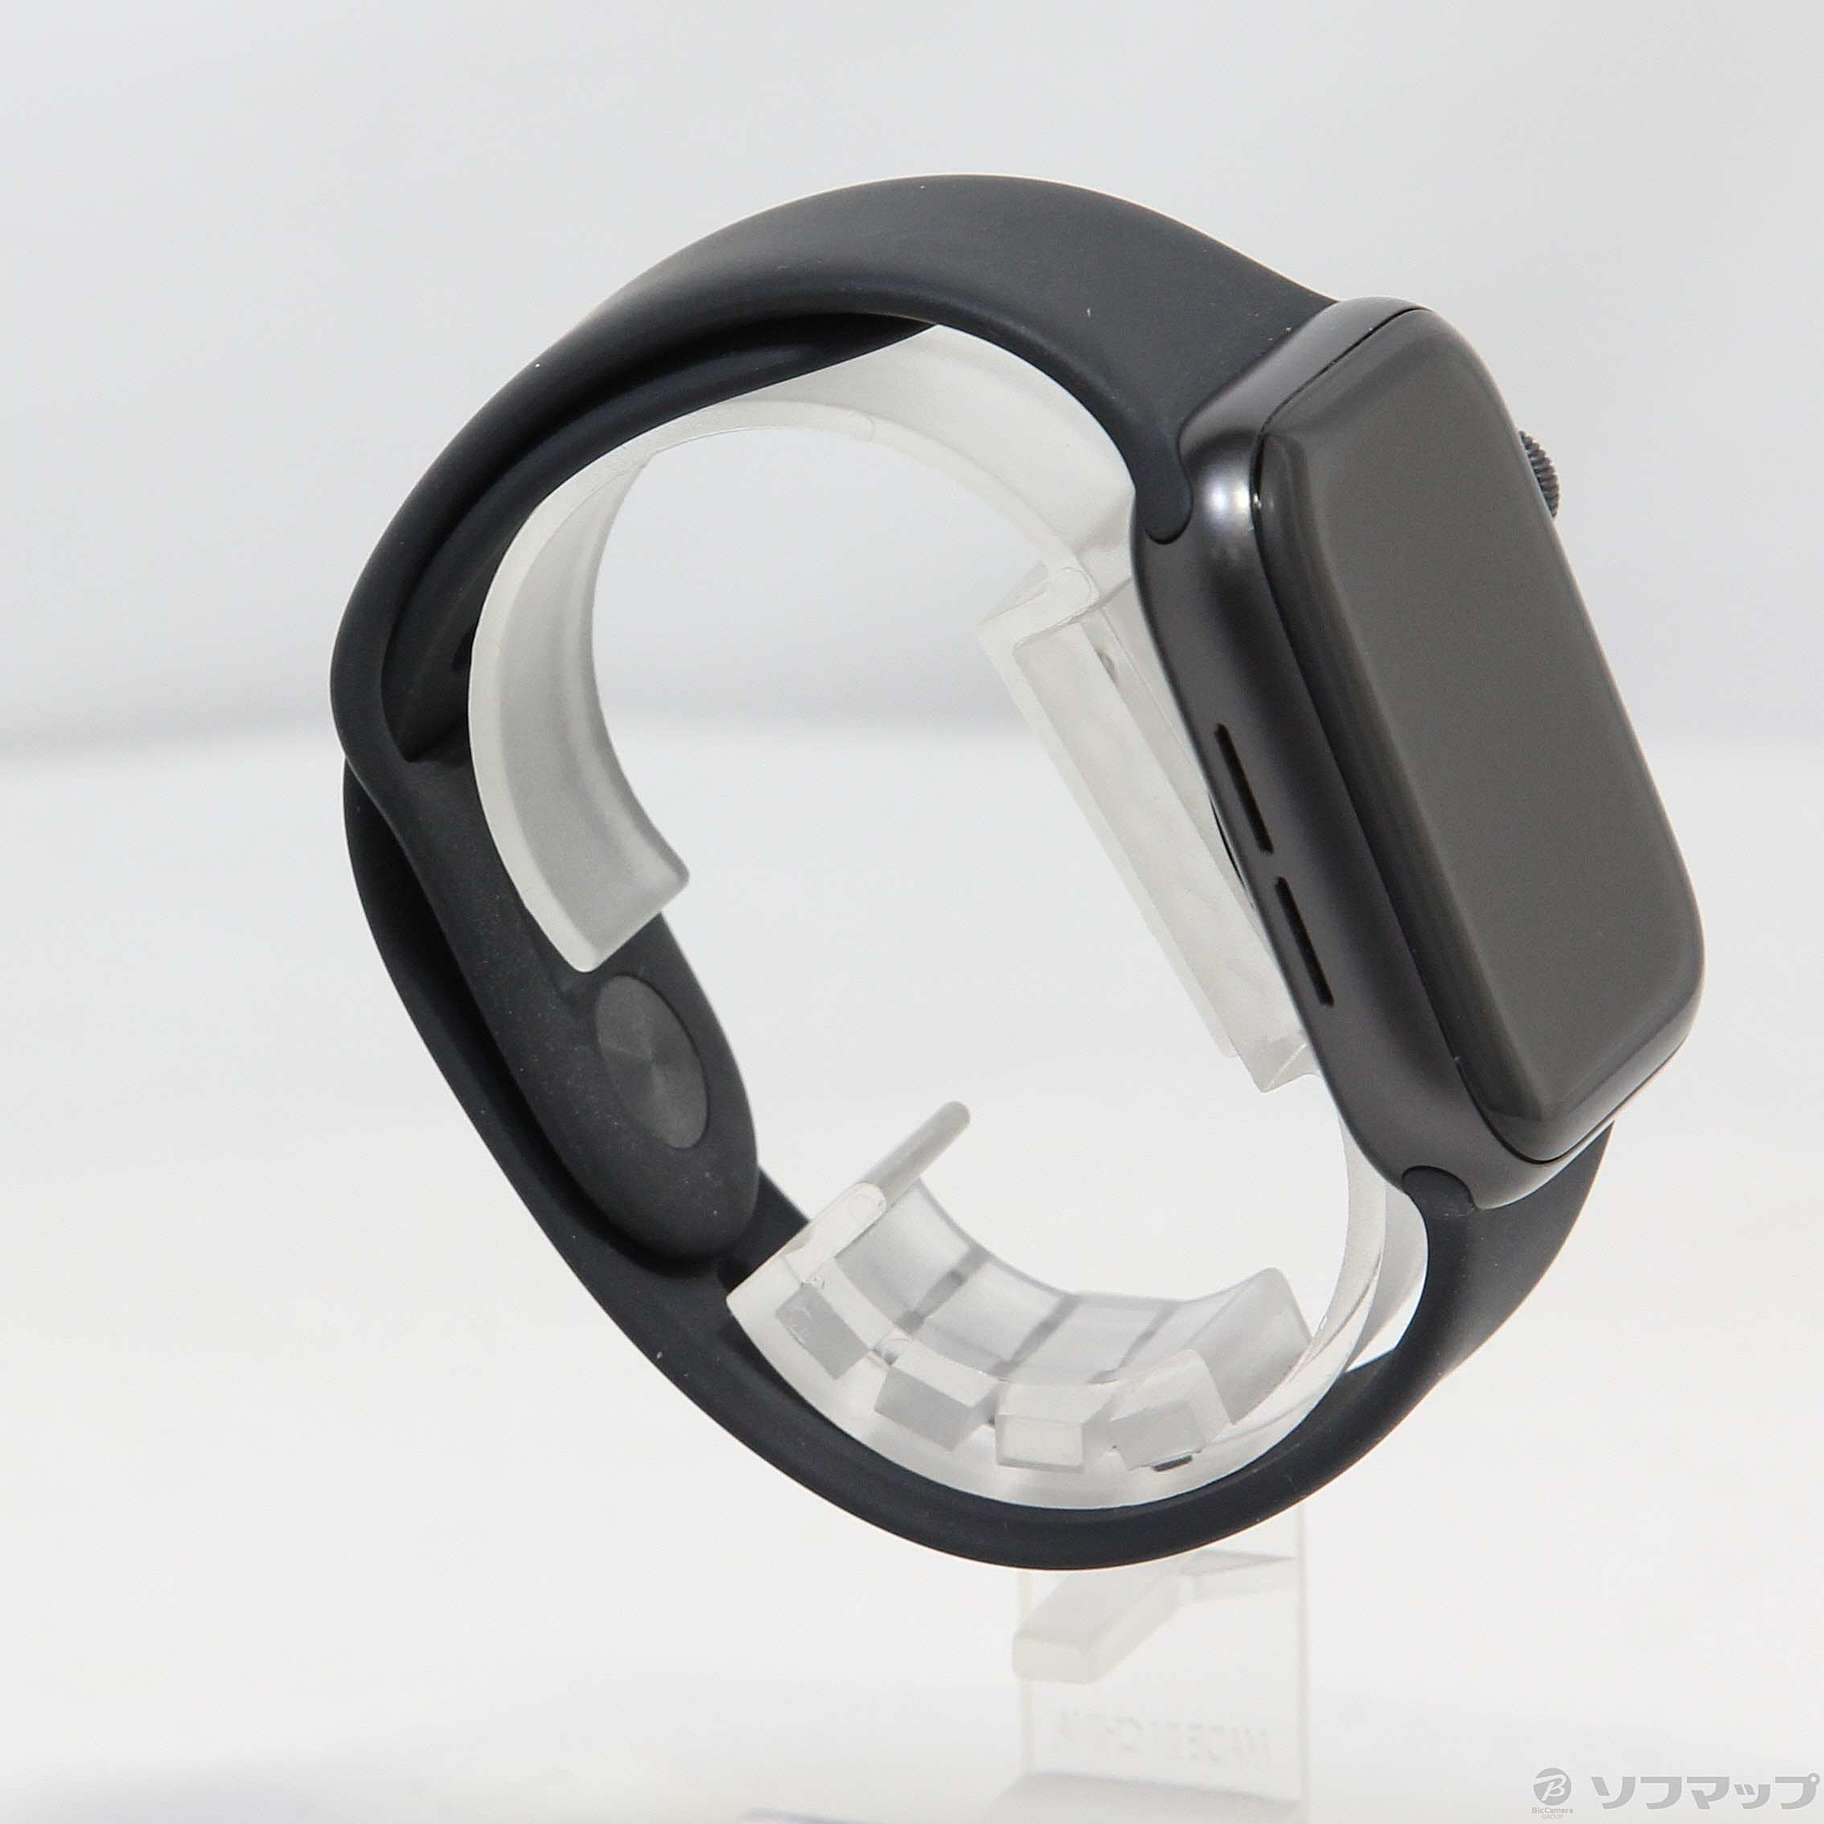 Apple(アップル) Apple Watch SE 第1世代 GPS 40mm スペースグレイ